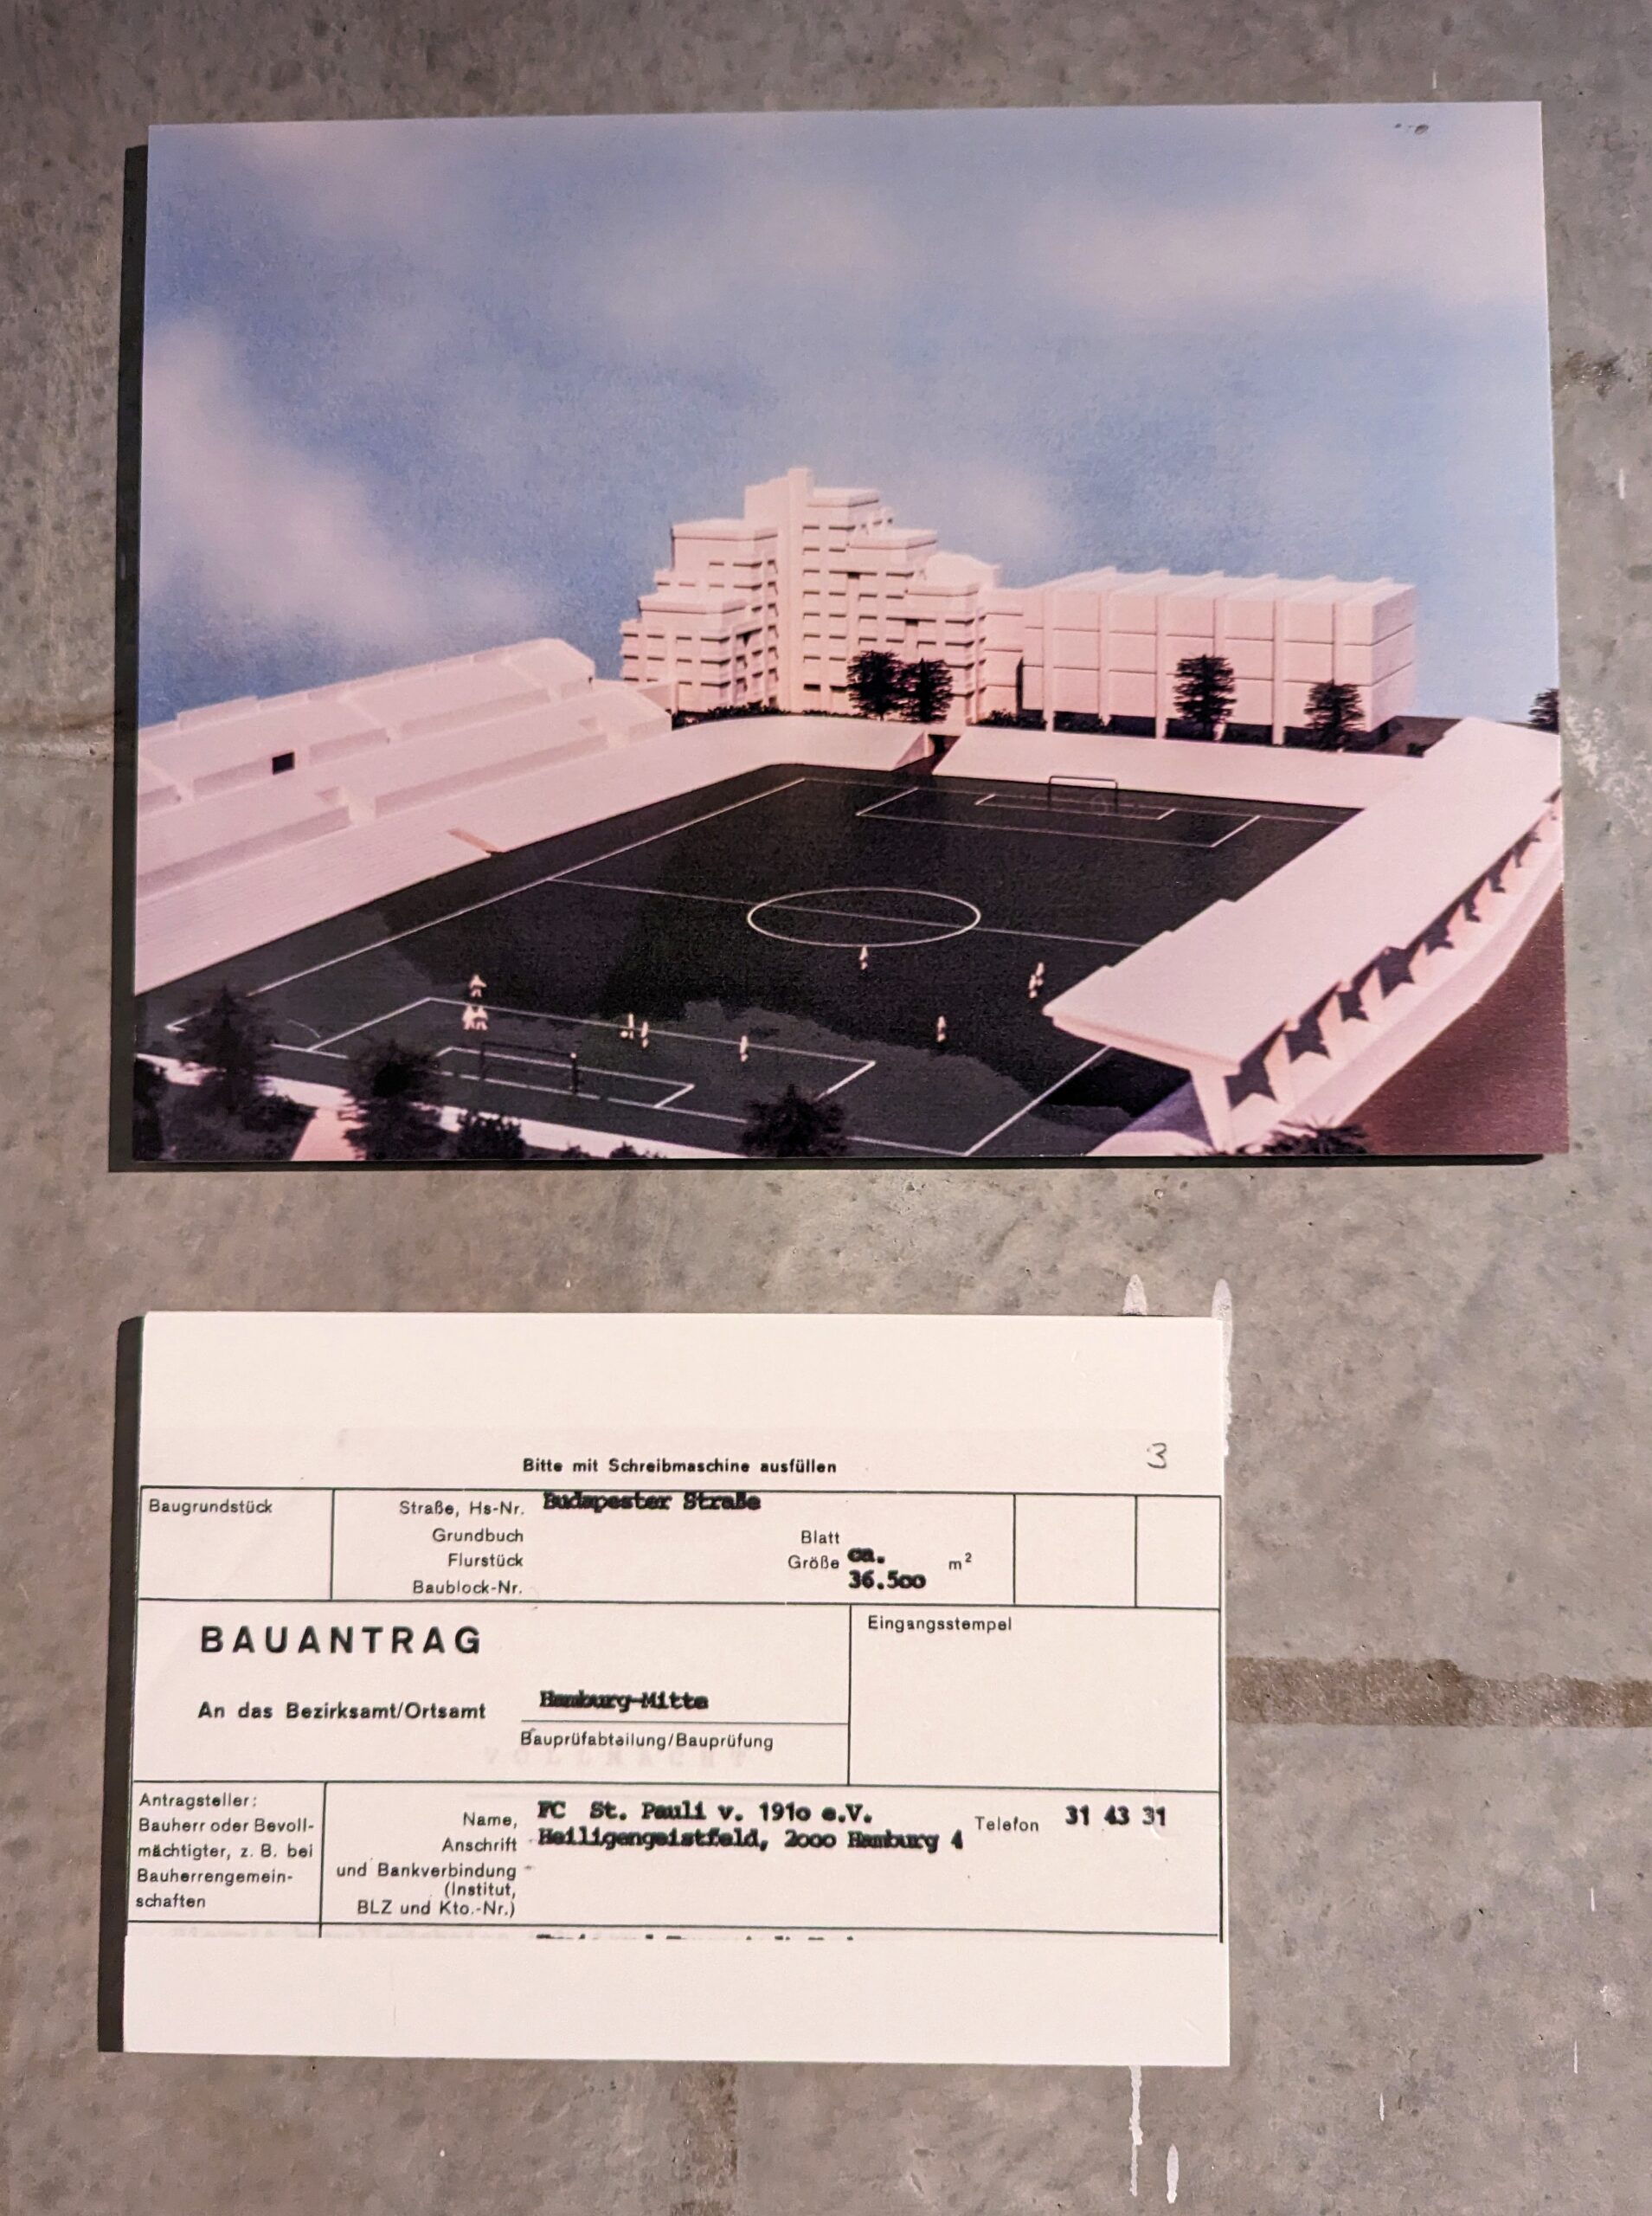 Der geplante Sport-Dome auf St. Pauli